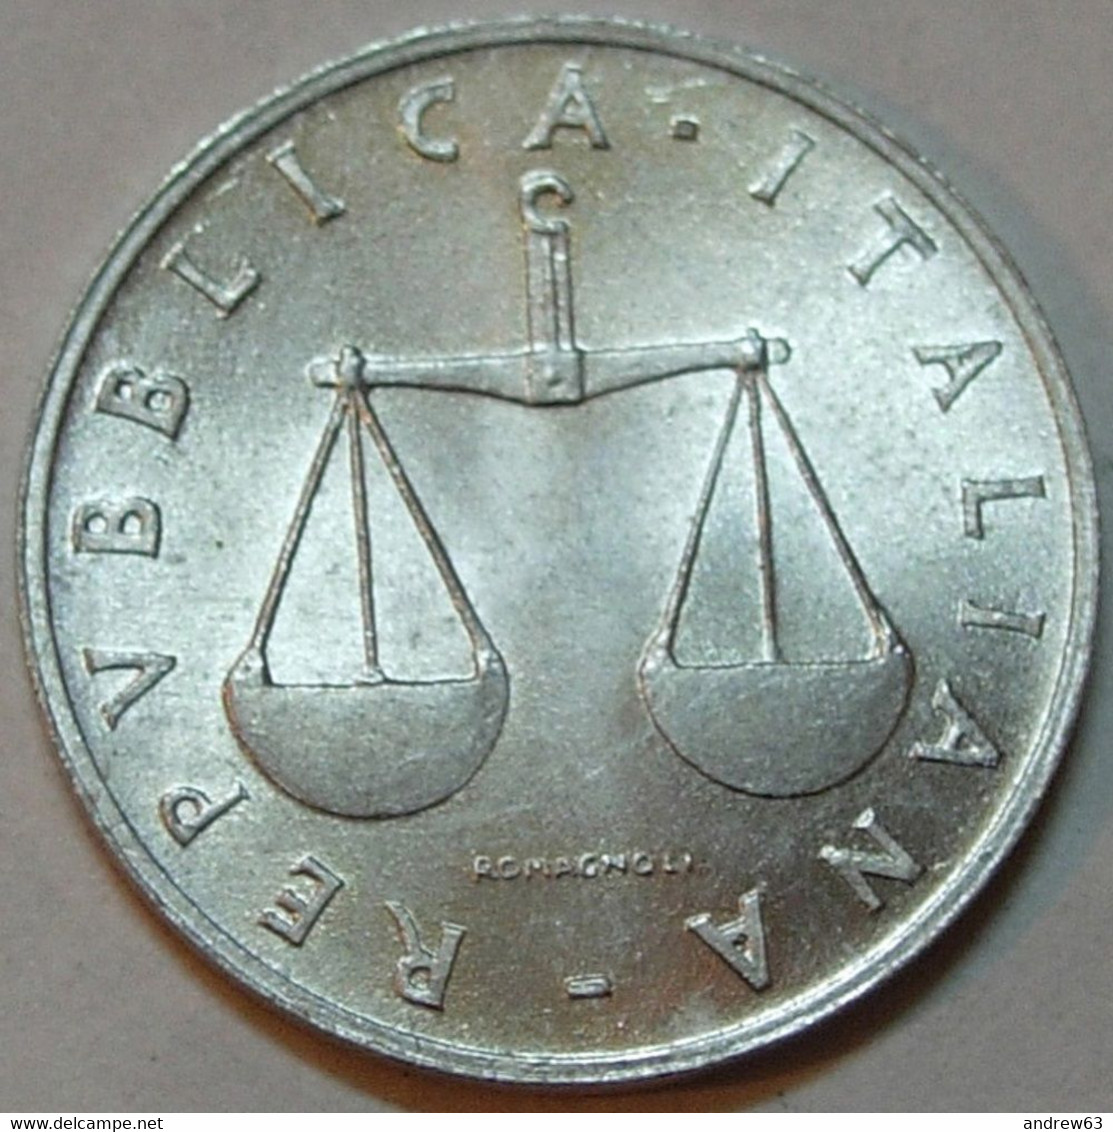 Lire 1 1955 - FDC/Unc Da Rotolino/from Roll 1 Moneta/1 Coin - 1 Lira